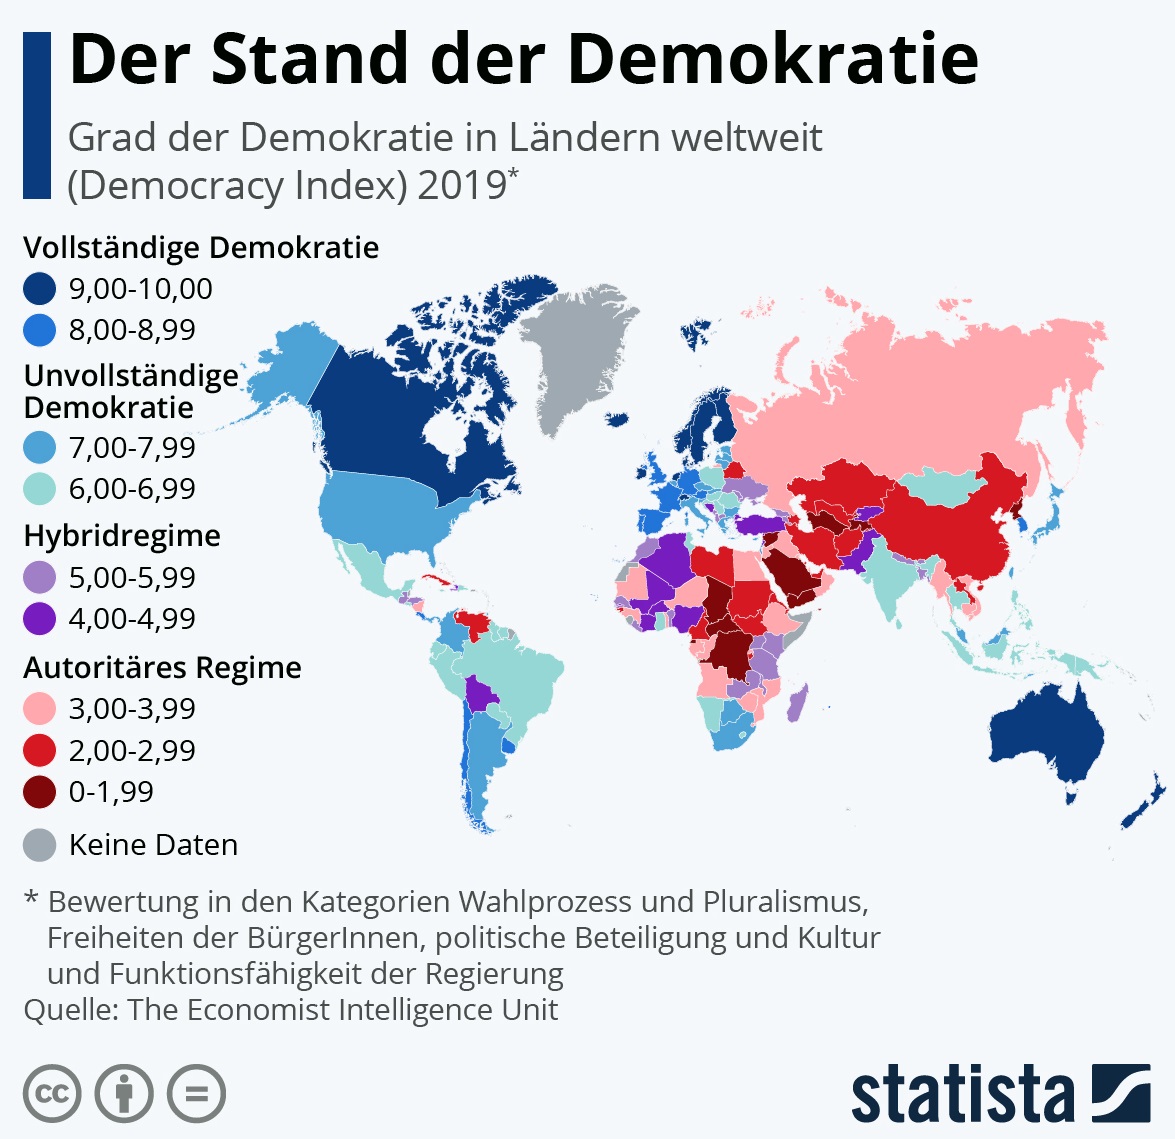 Die Grafik zeigt den Grad der Demokratie in Ländern weltweit (Democracy Index) 2019